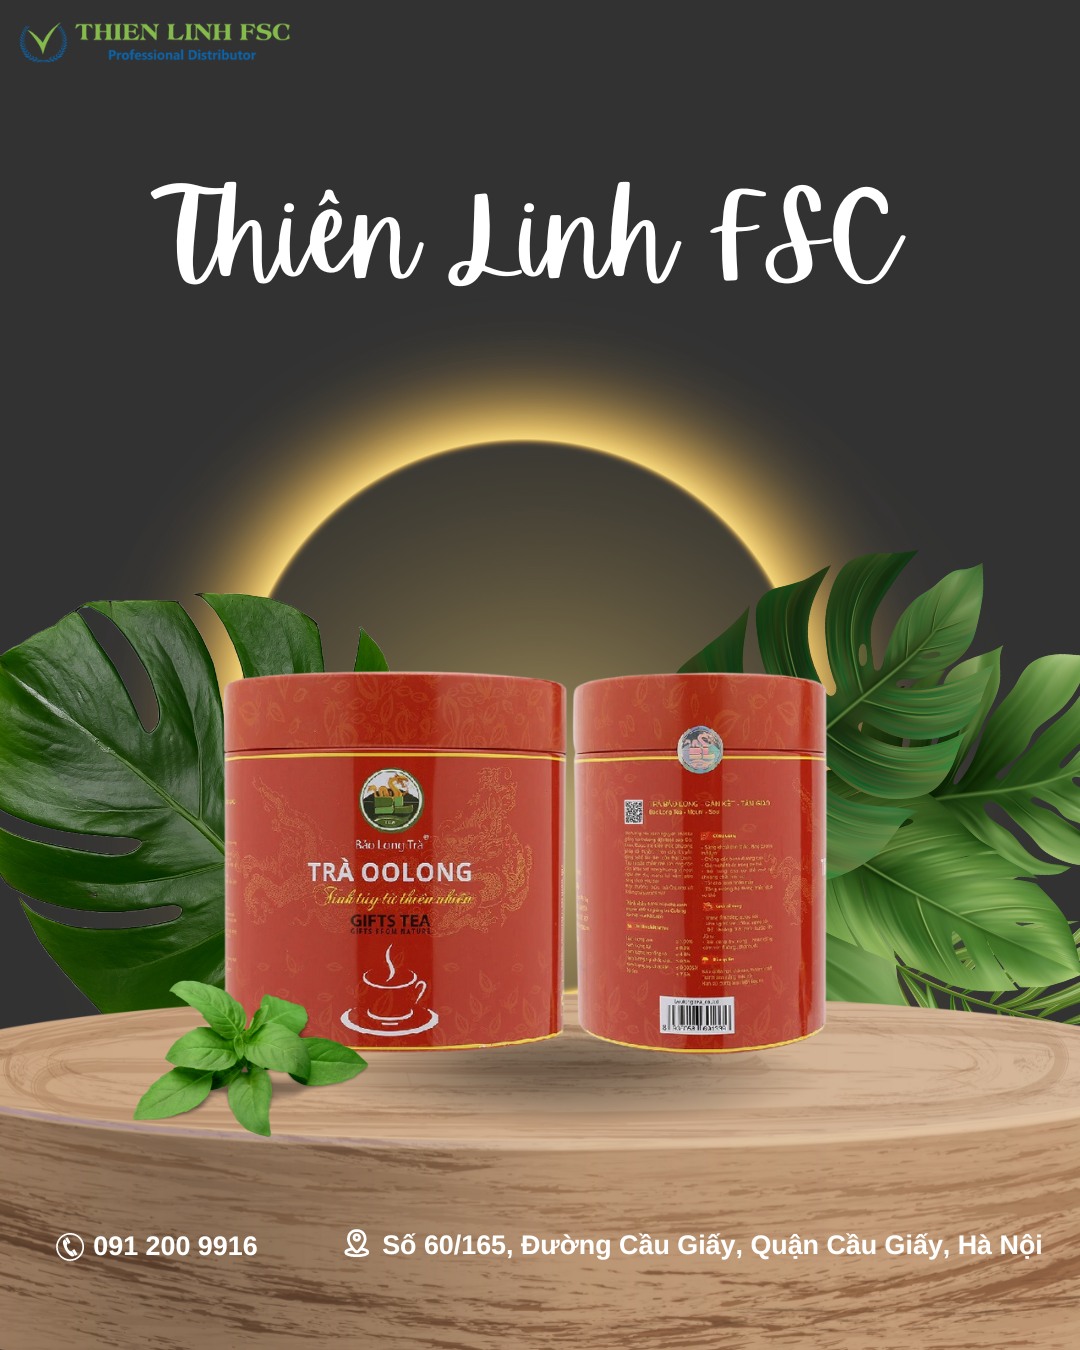 Thiên Linh FSC - Địa chỉ uy tin cung cấp trà ô long chất lượng tốt